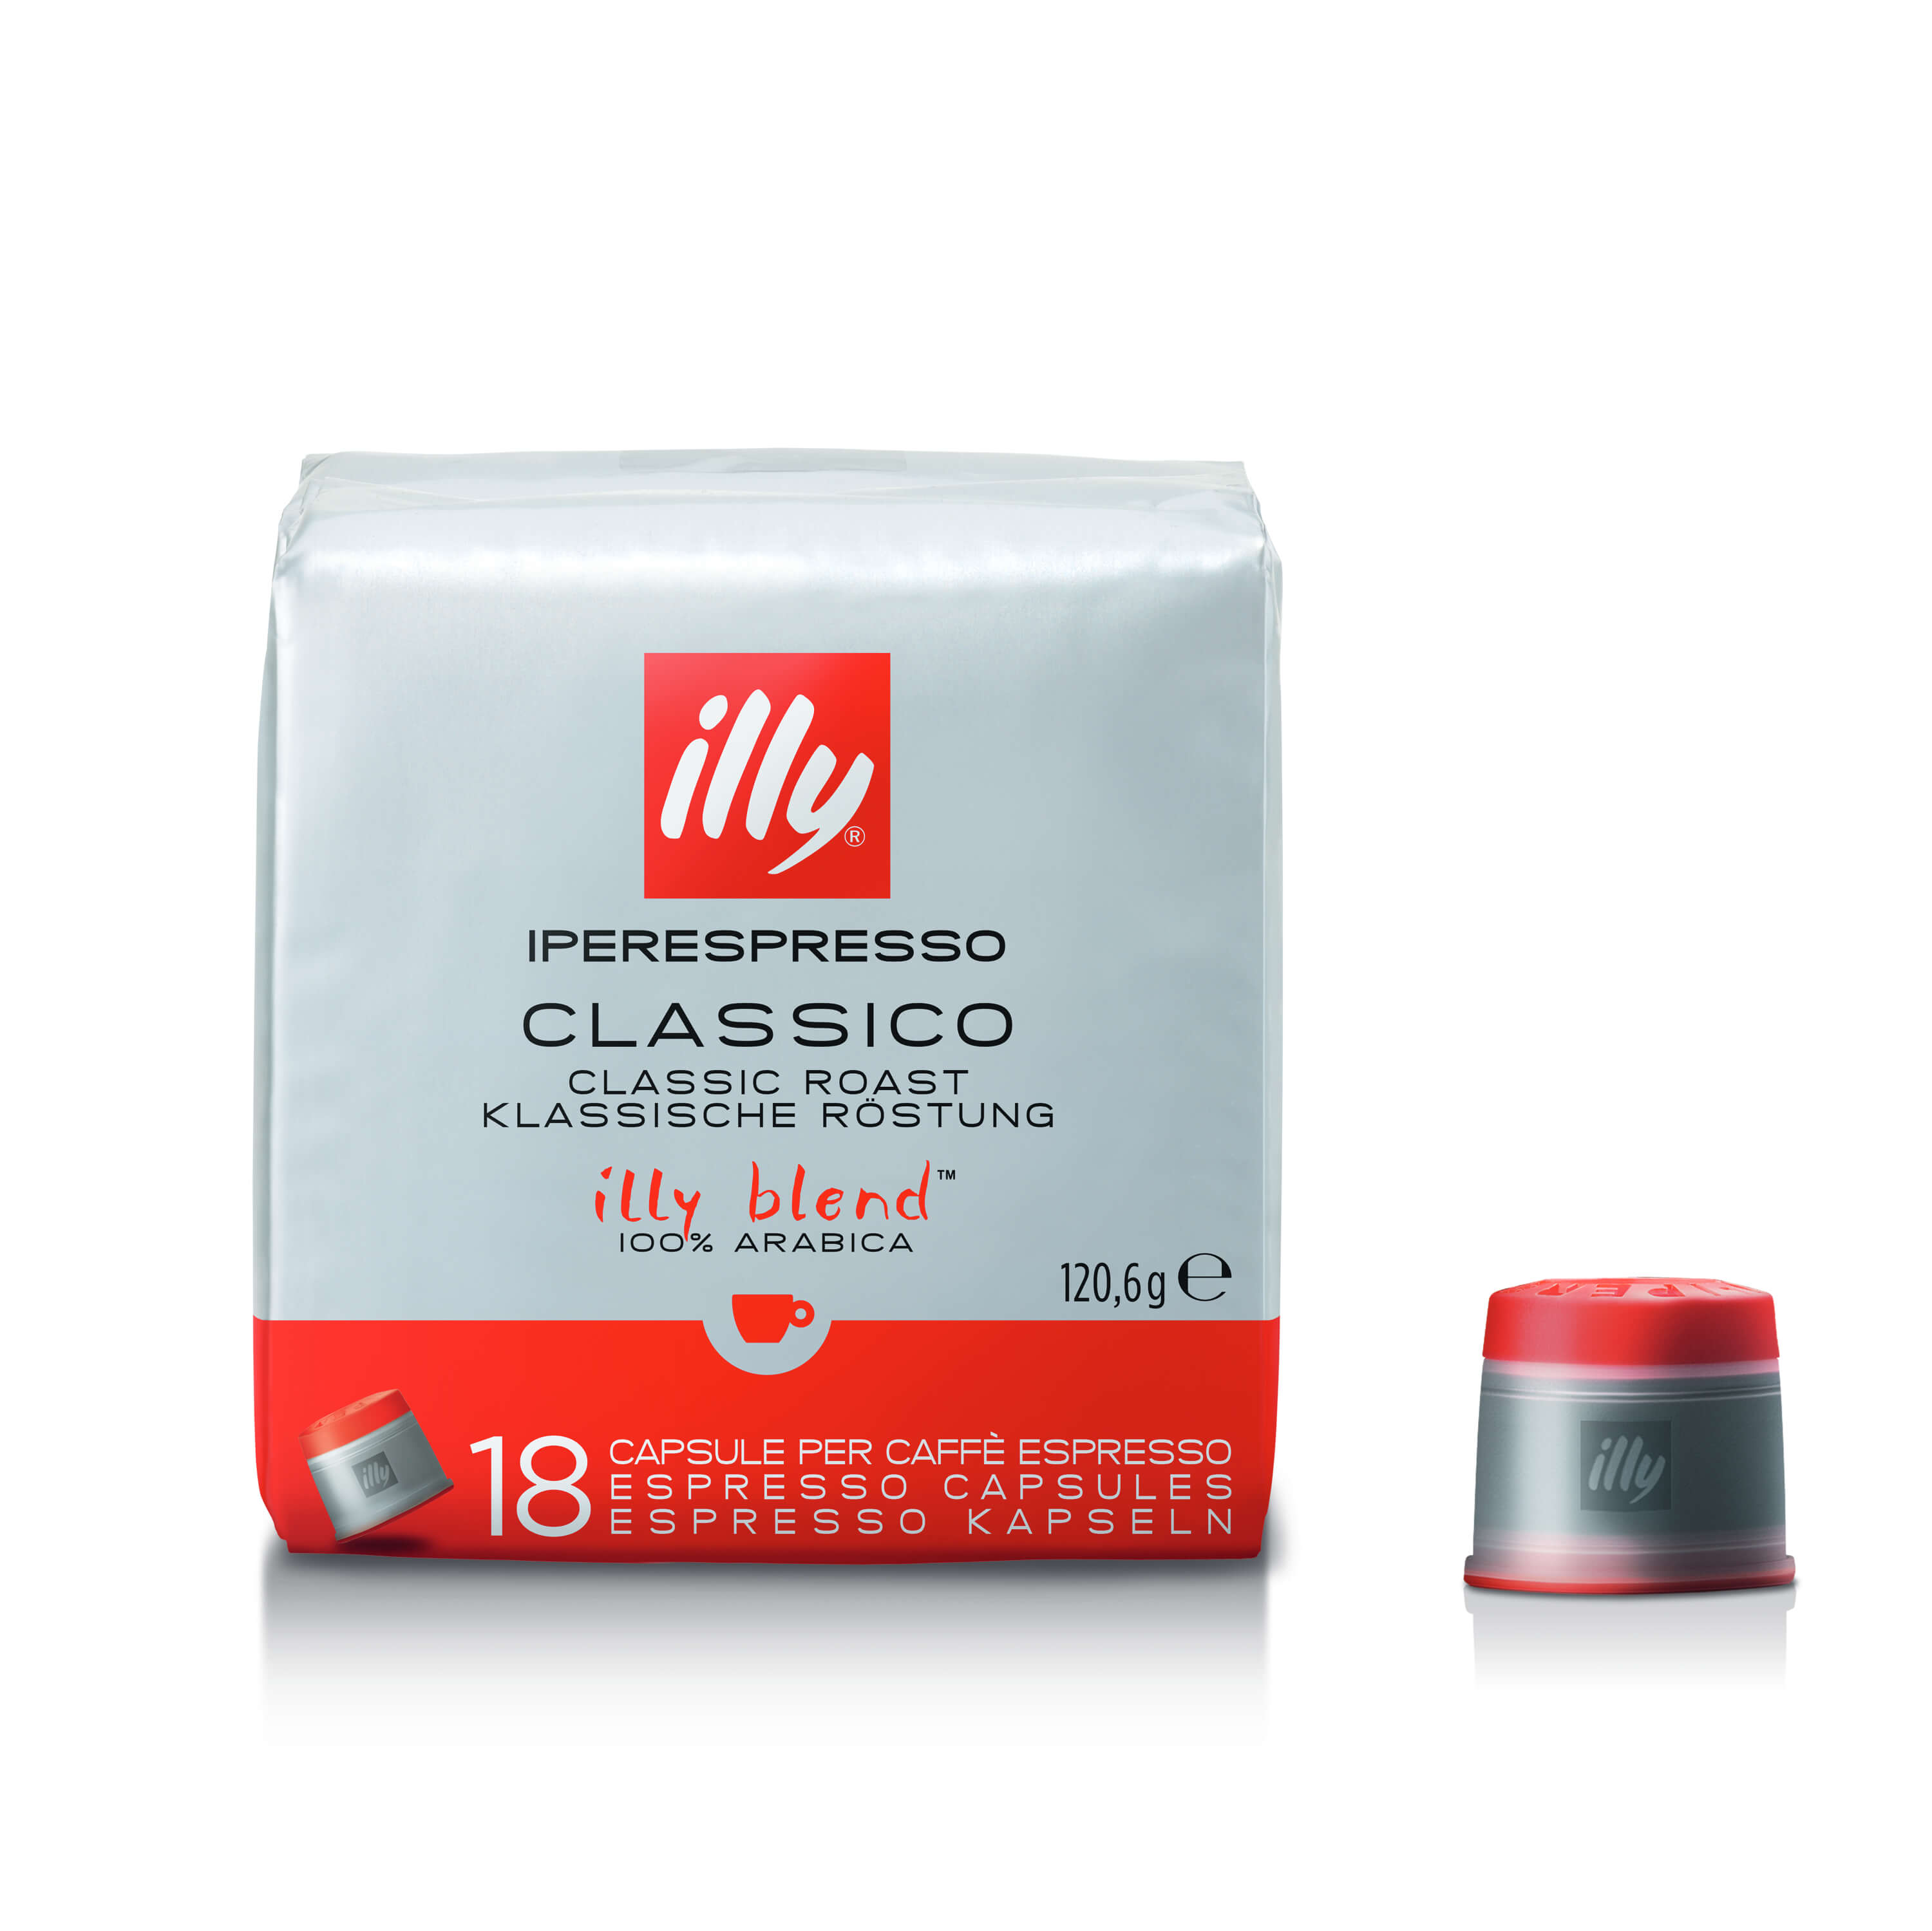 Iperespresso Capsules CLASSICO - 18 capsules (-0,70€), Blend, 01-04-2200